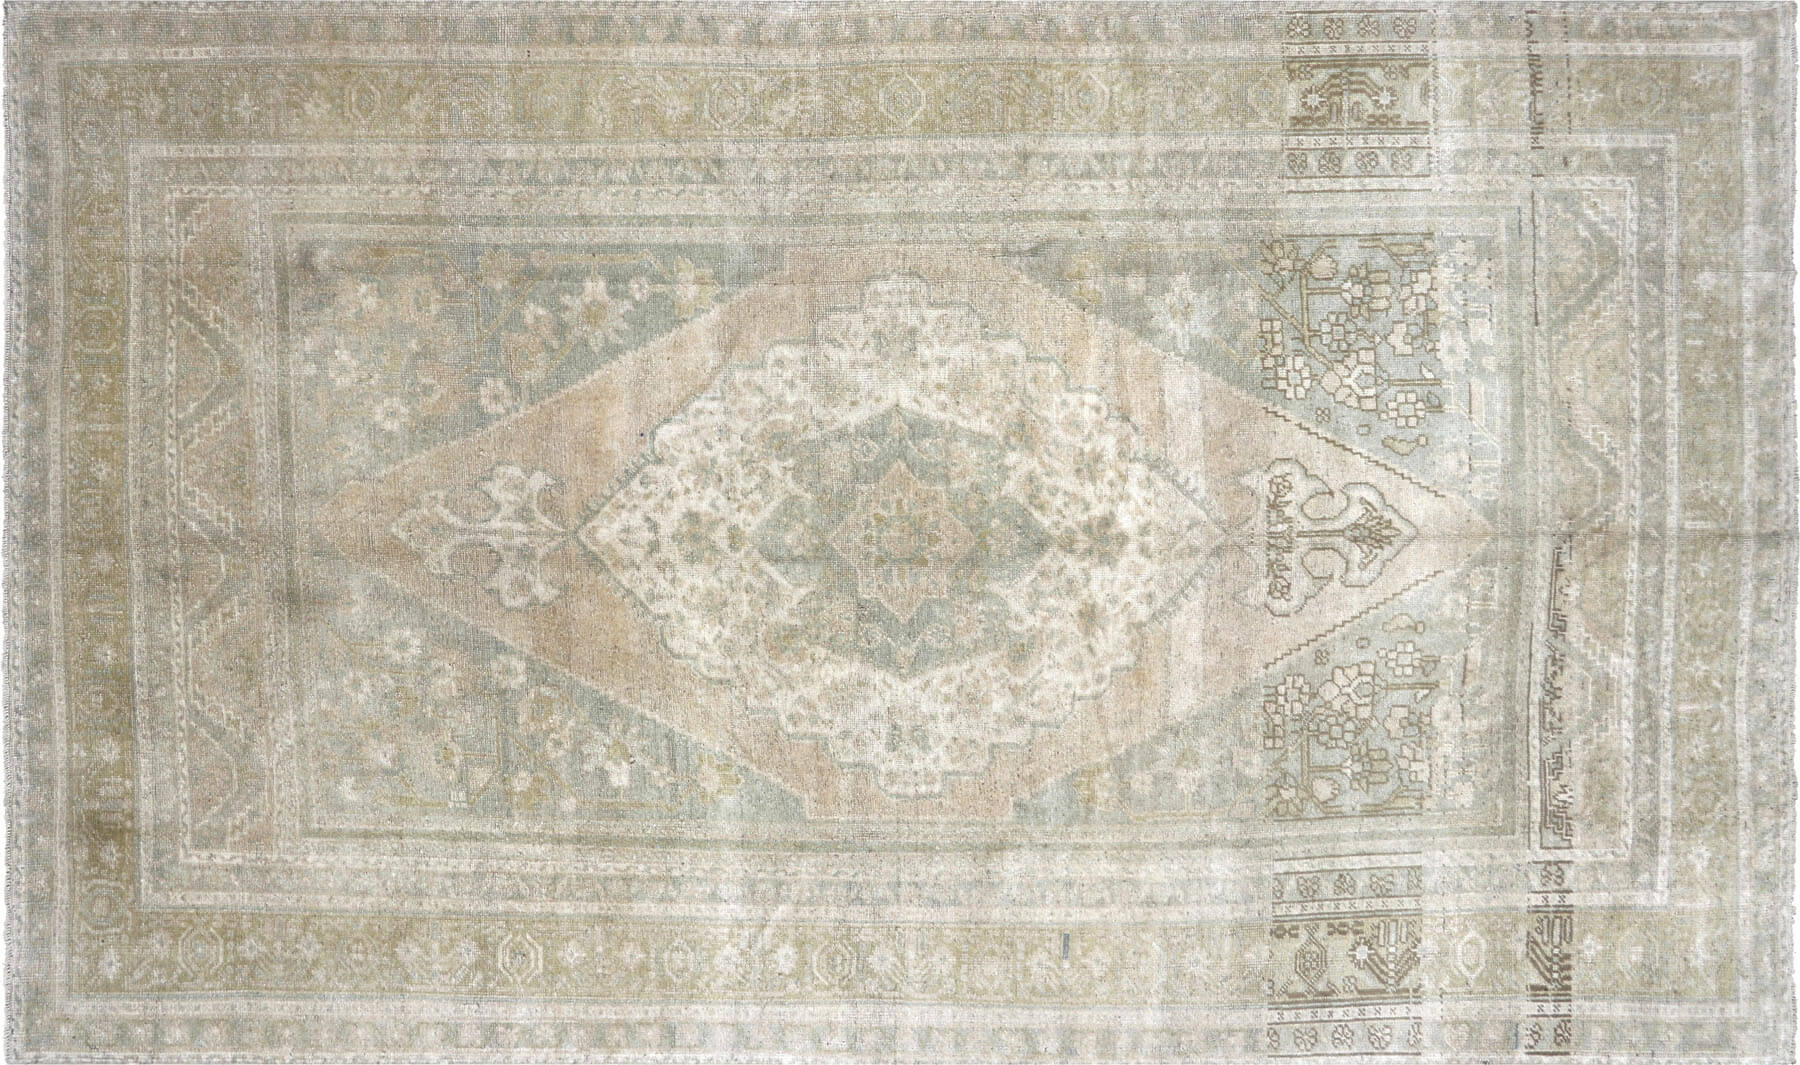 Vintage Turkish Oushak Carpet - 6'4" x 10'8"